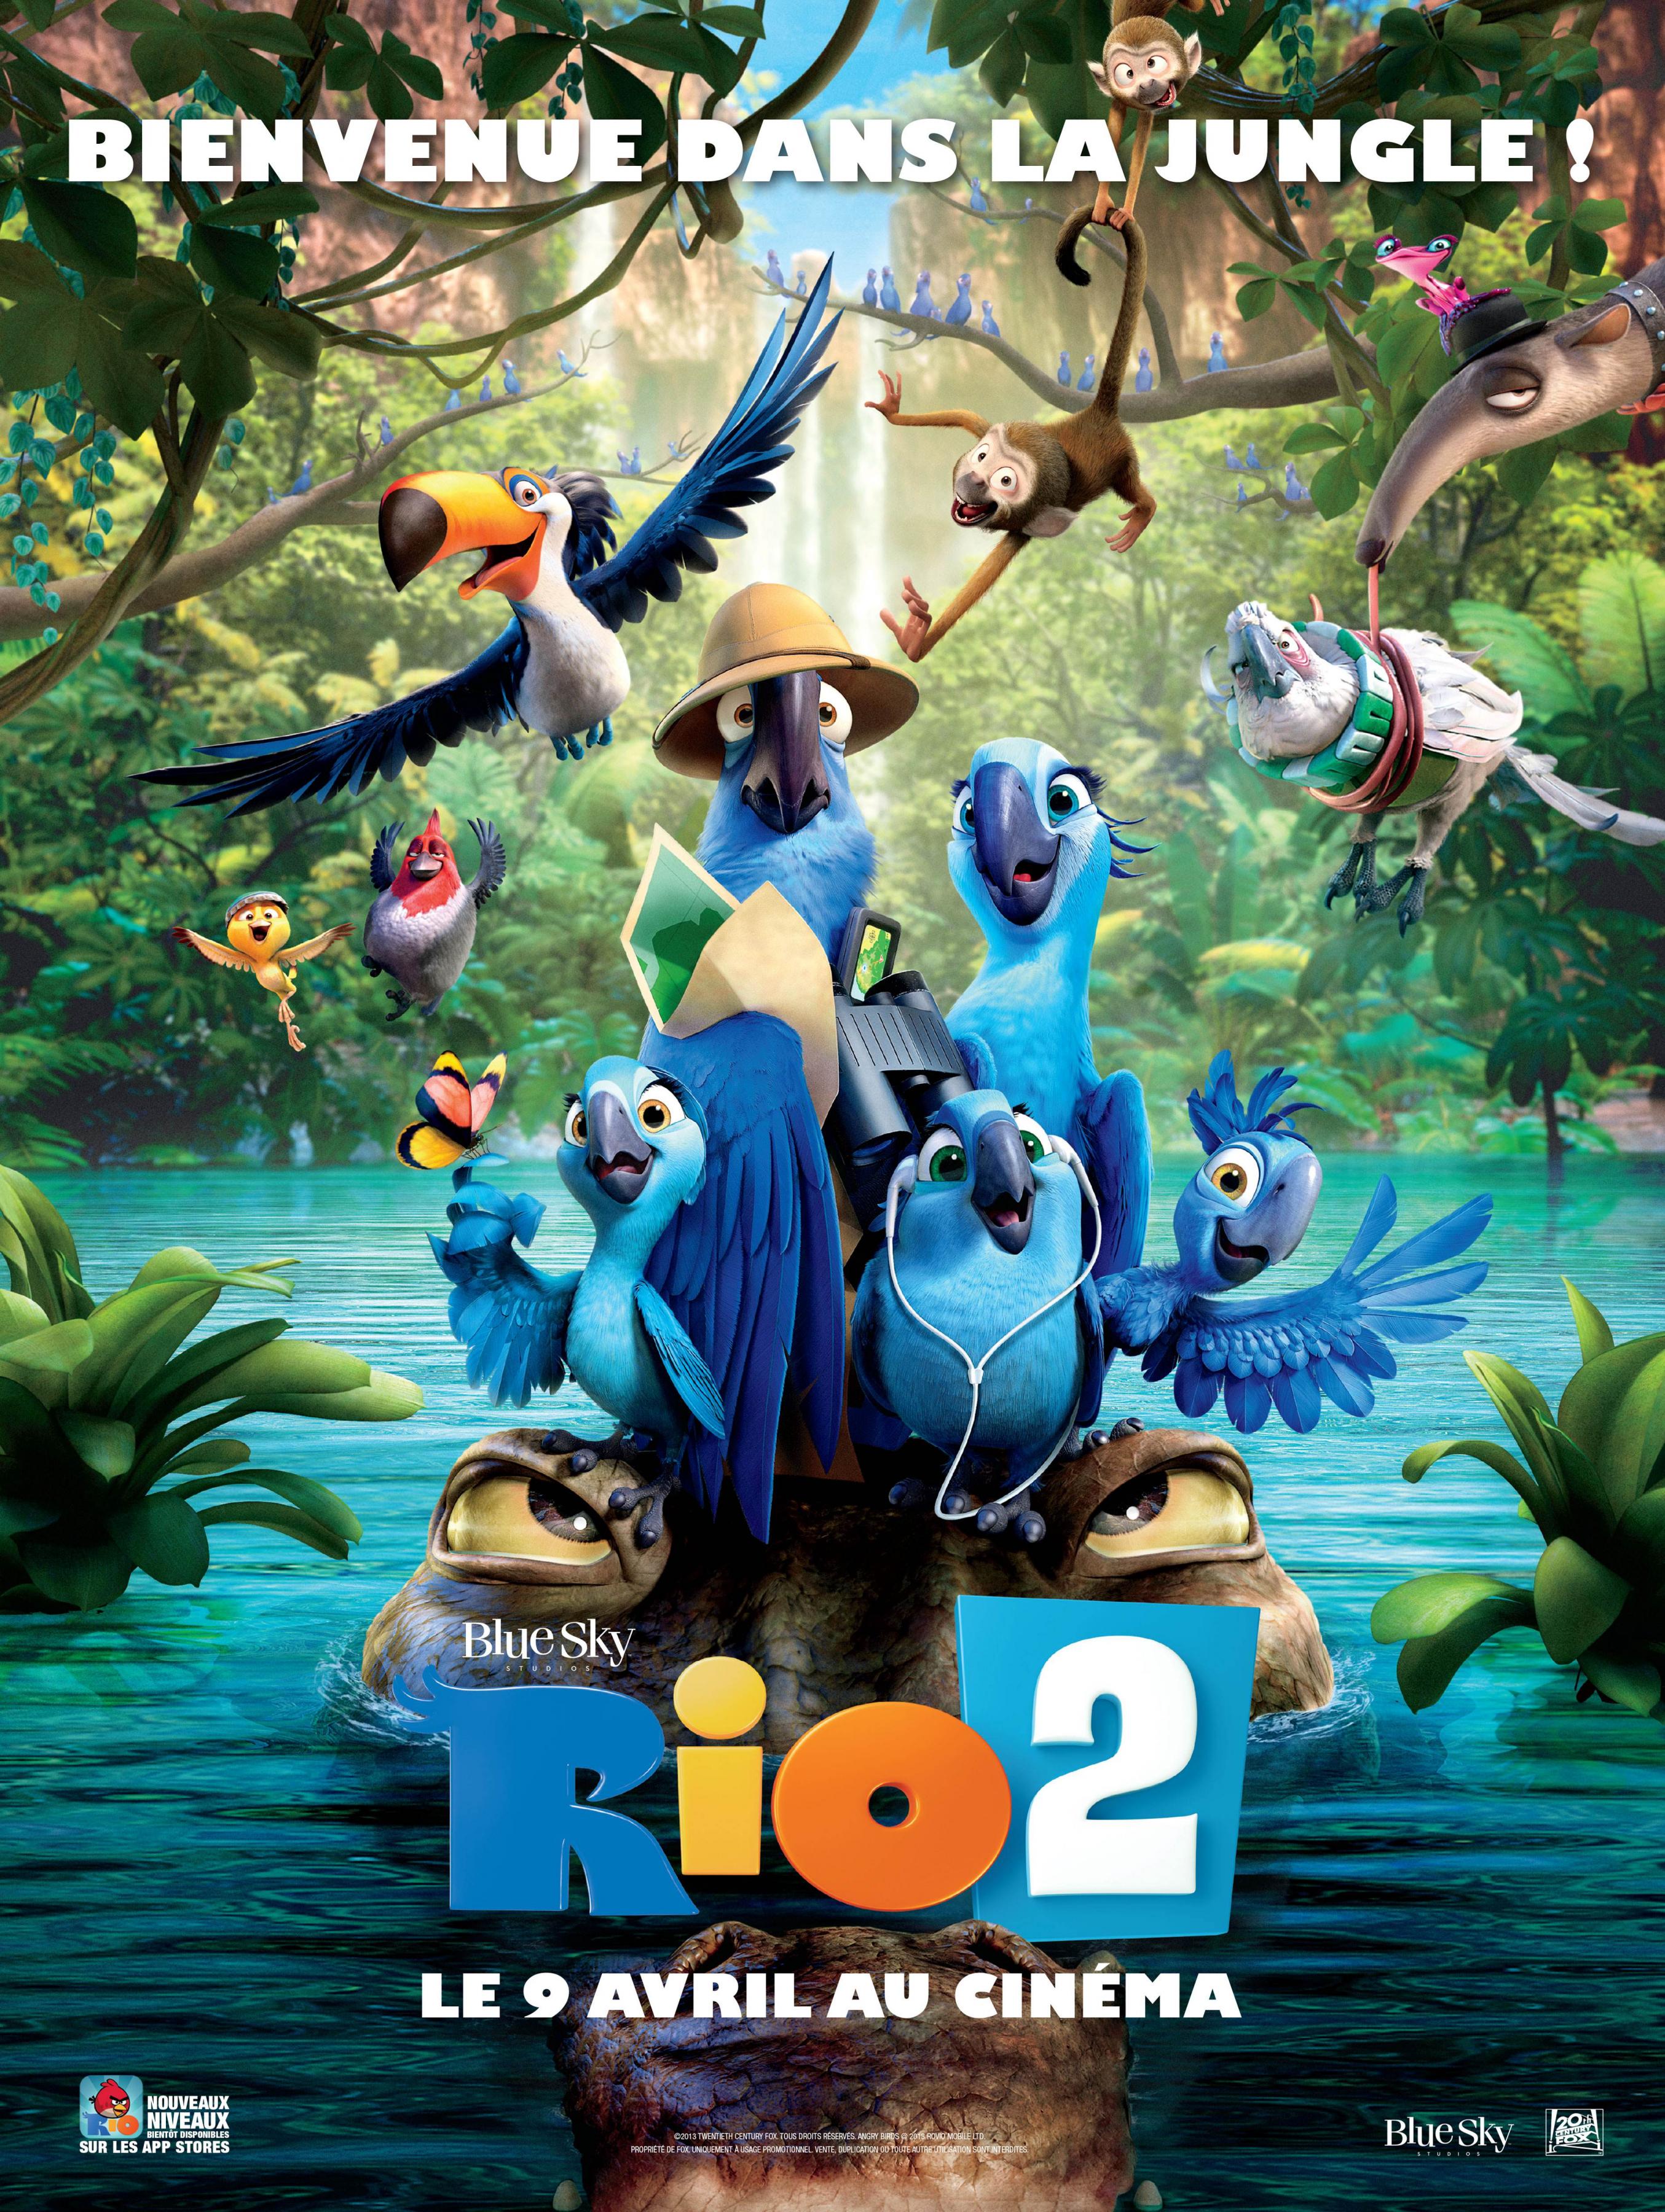 Постер фильма Рио 2 | Rio 2